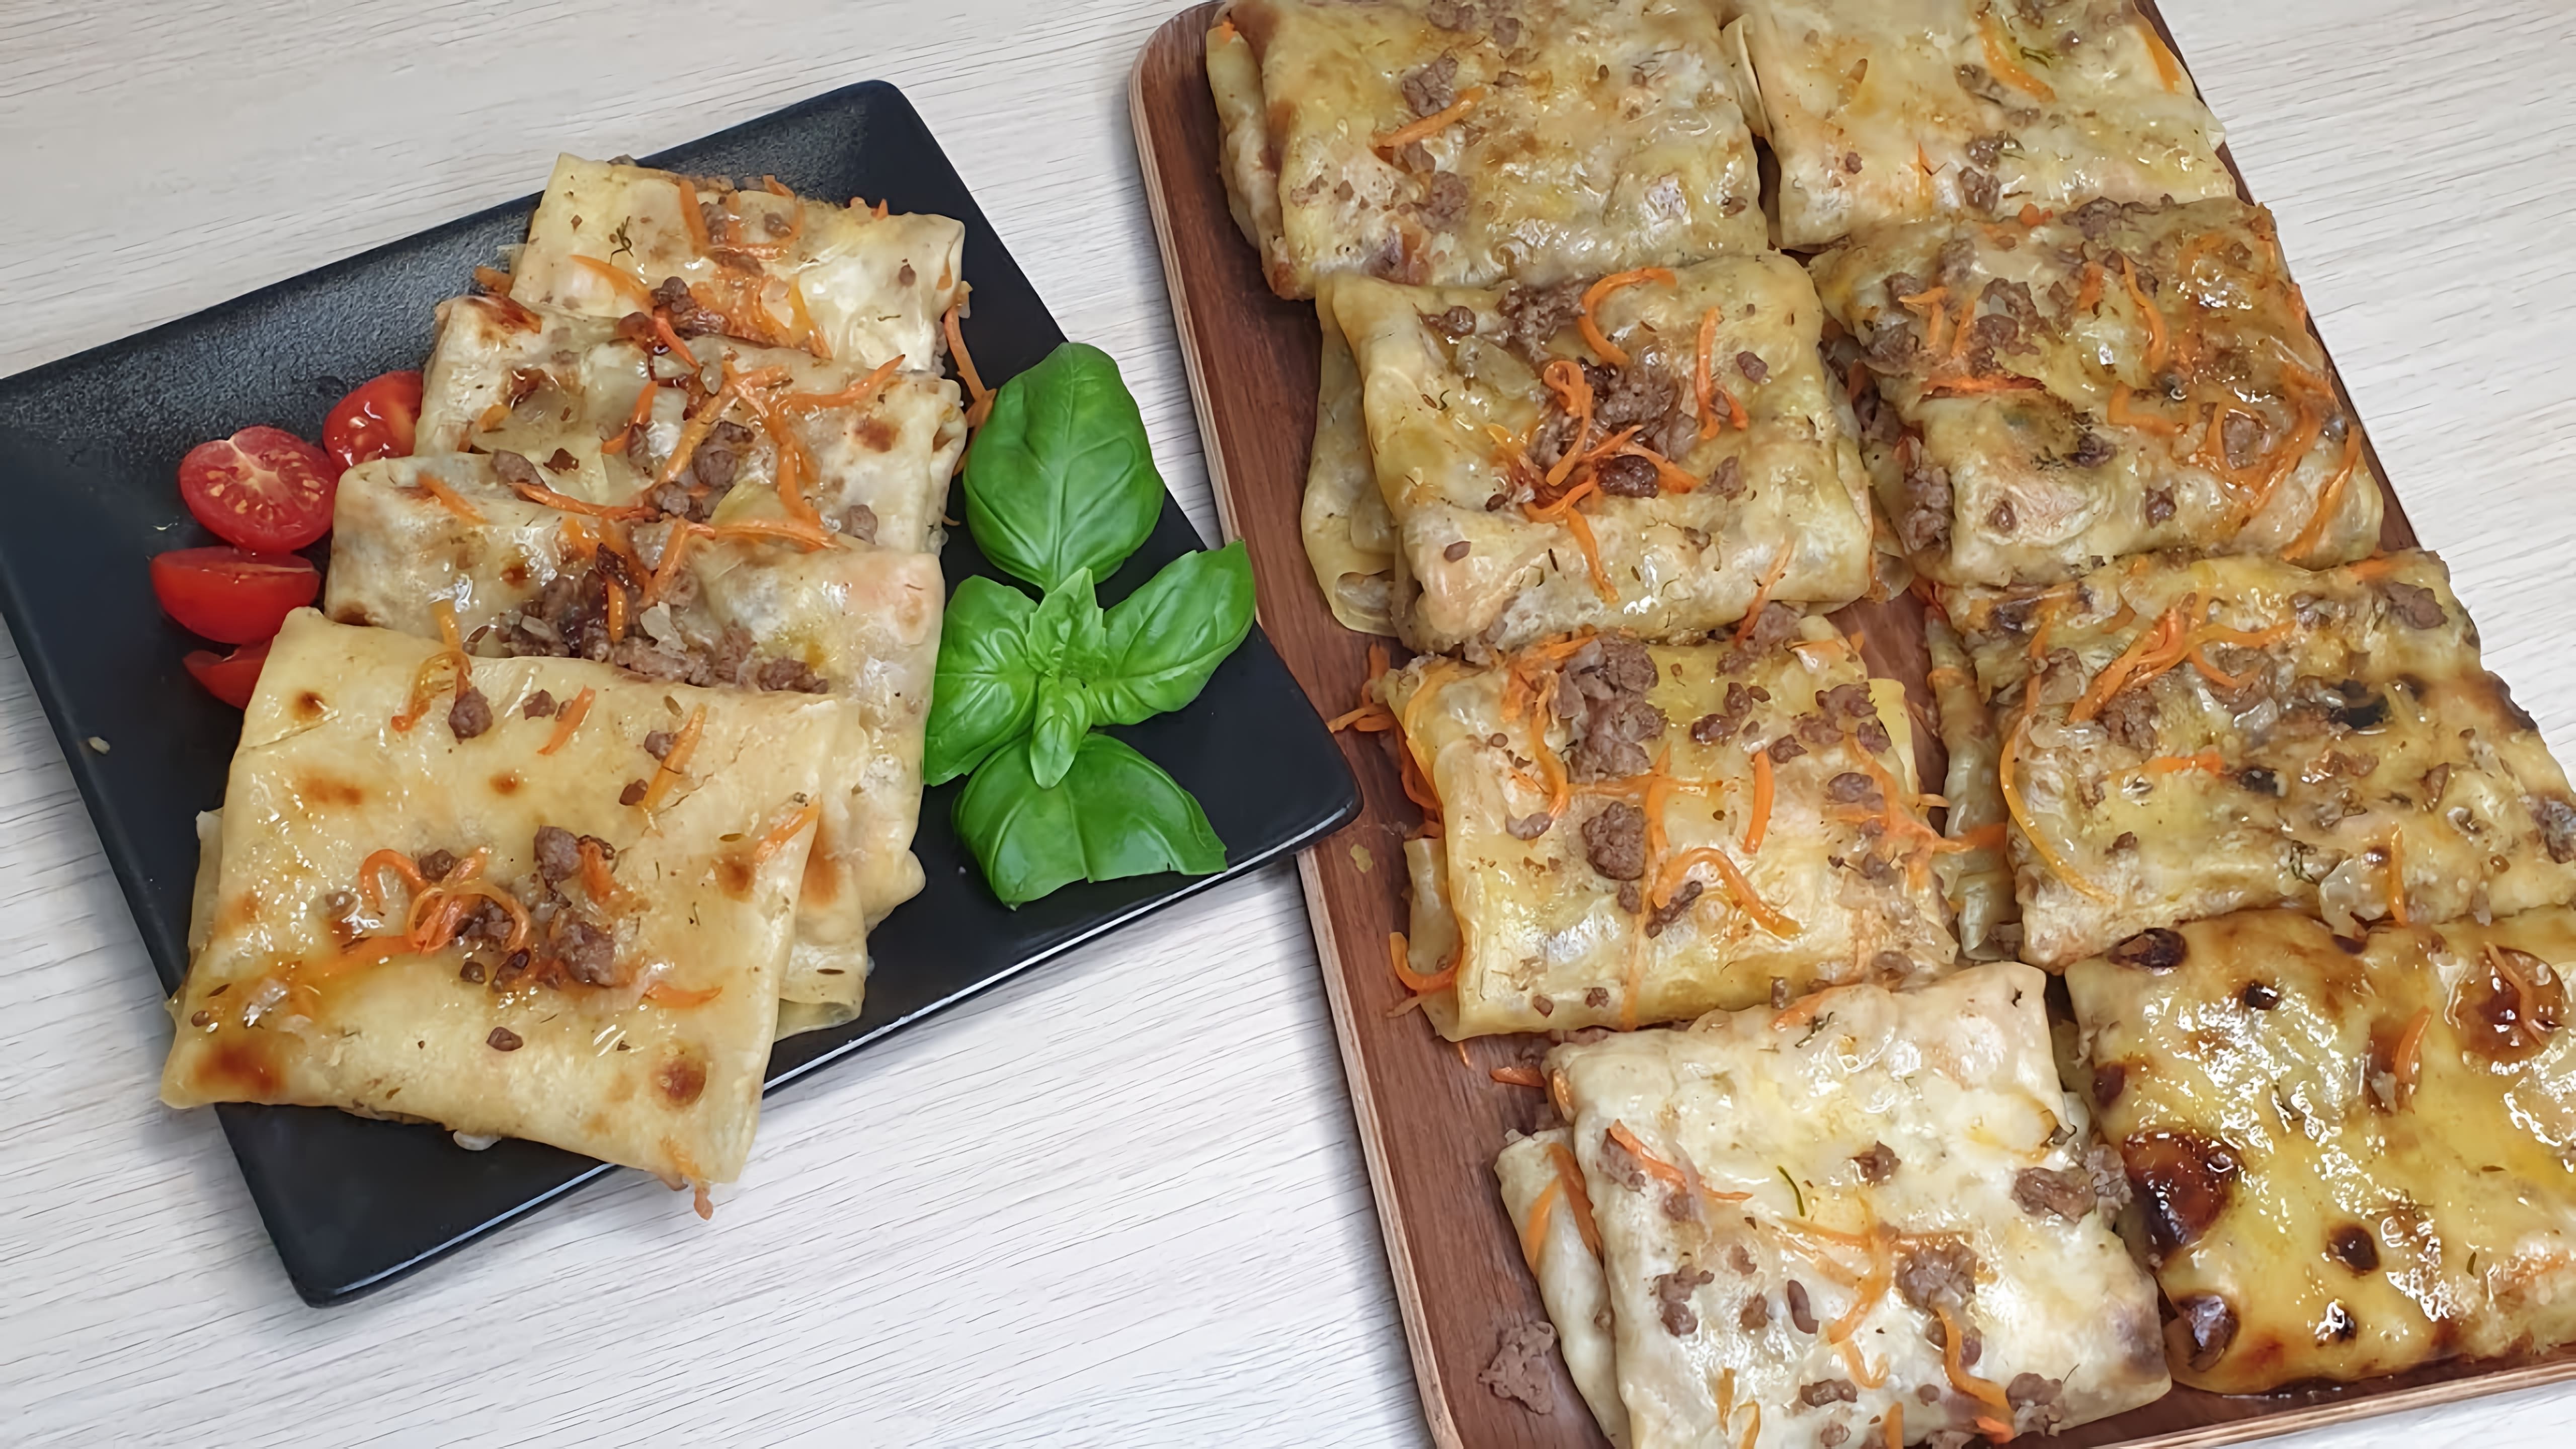 "Yupqa☆ Узбекская национальная кухня" - это видео-ролик, который представляет собой обзор узбекских блюд